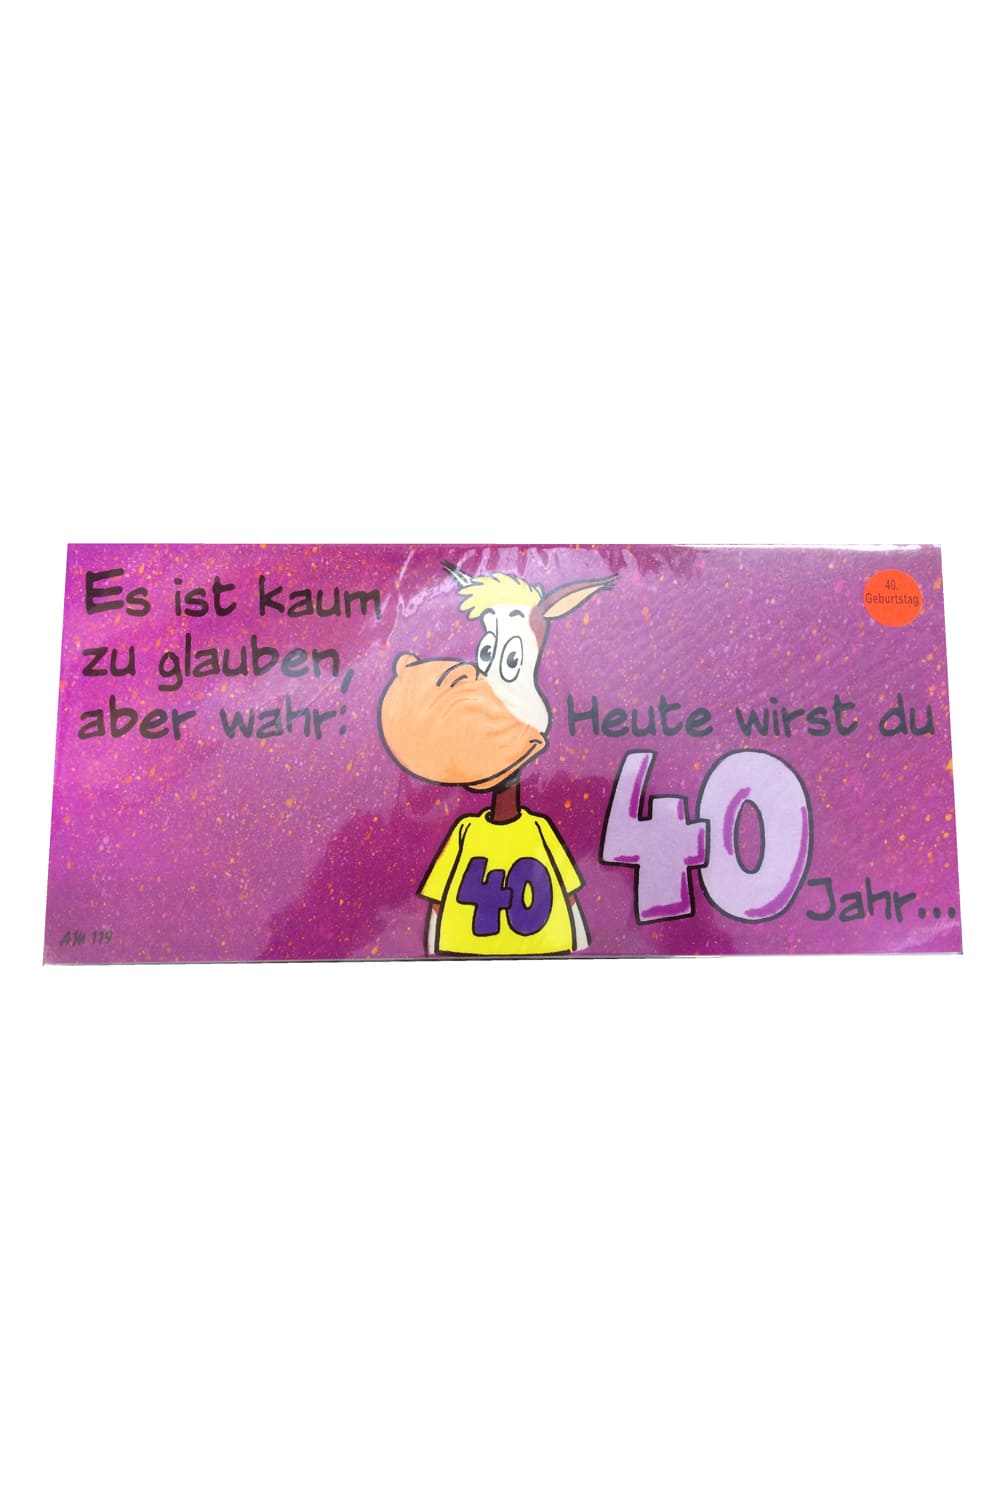 40. Geburtstag Glueckwunschkarte A3 mit Sprüche und einem Esel und die Zahl 40. Tolle Geburtstagskarte. Es ist kaum zu glauben, aber wahr: Heute wirst du 40 Jahr.